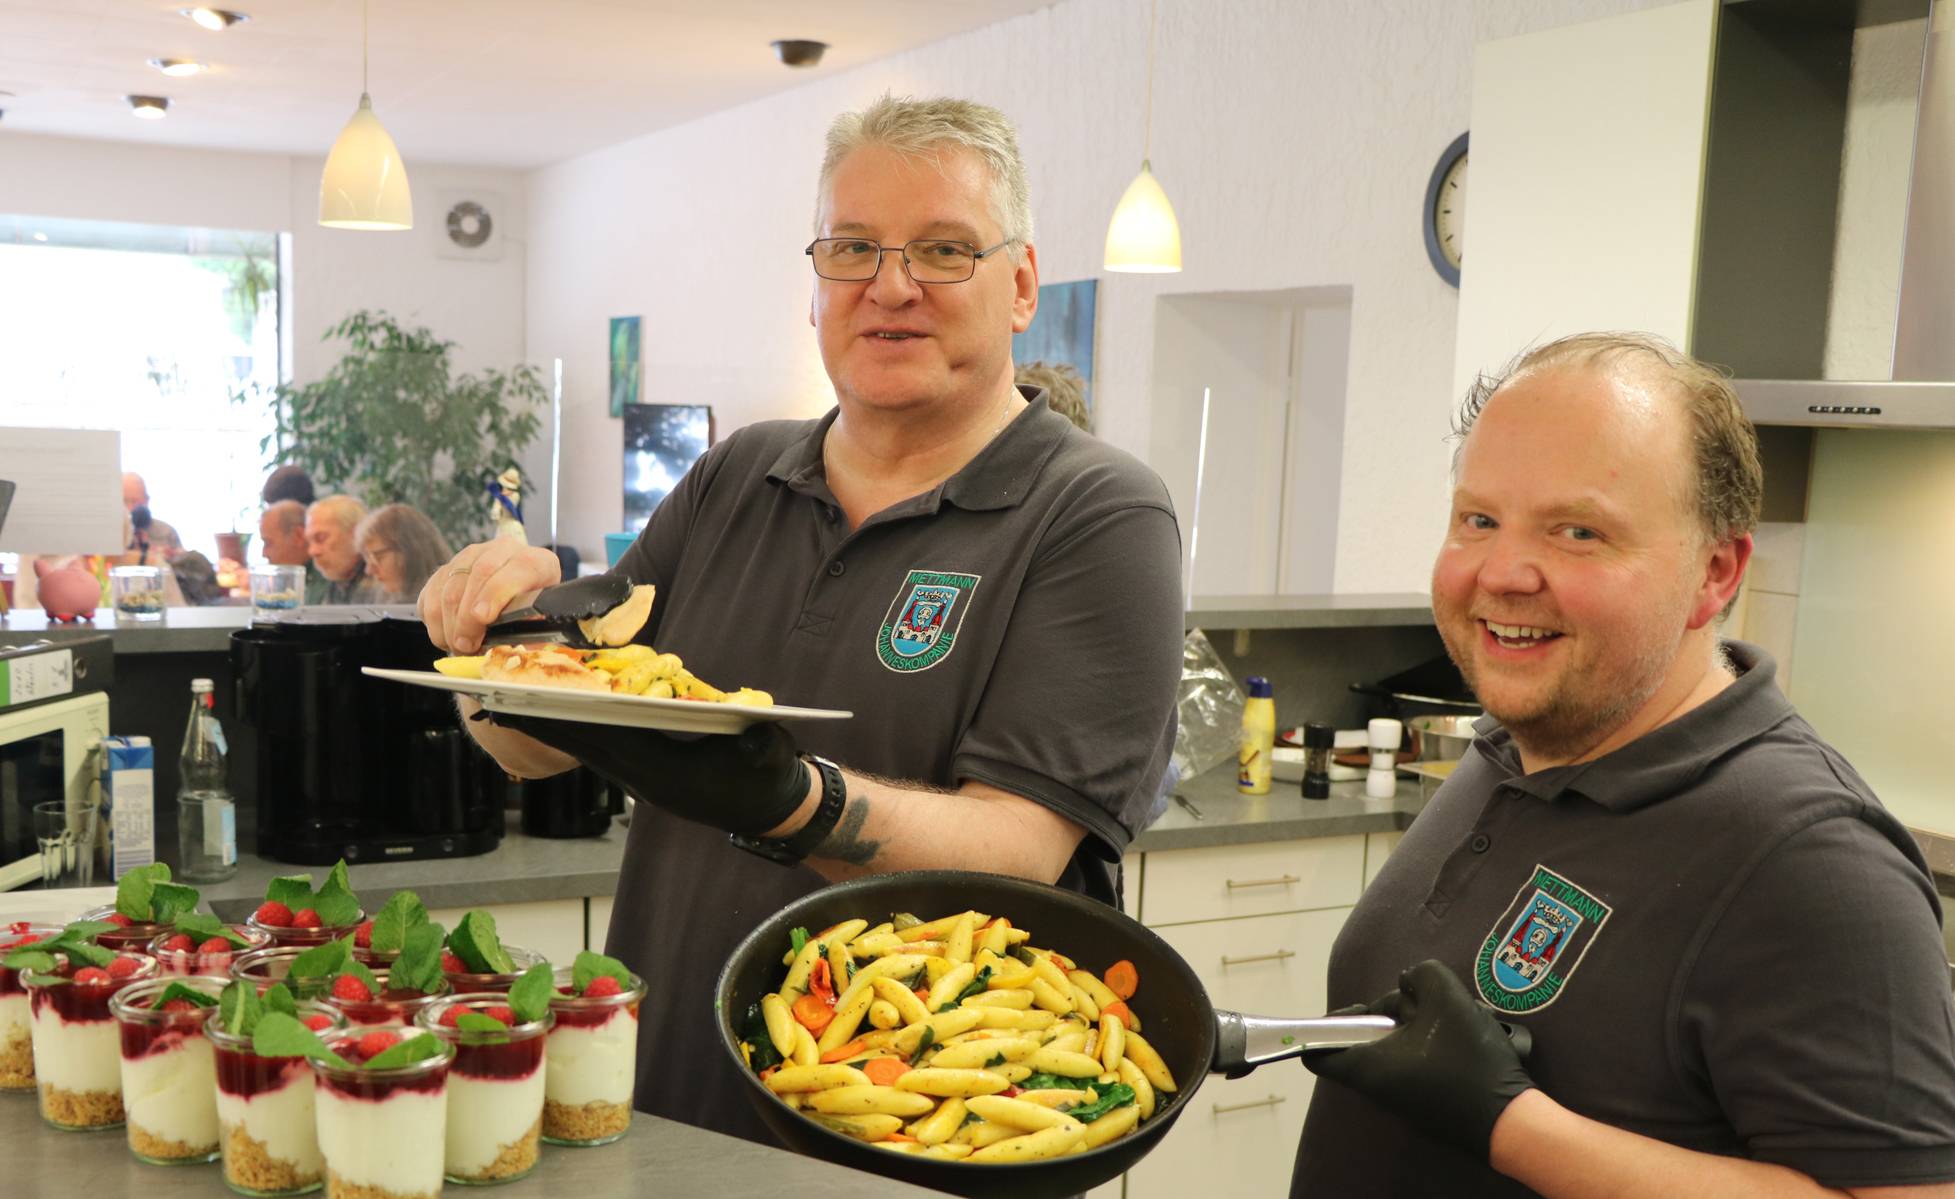  Das sieht nicht nur lecker aus: Klaus Stickley und Stefan Räker kochten eine schmackhafte Mahlzeit.   